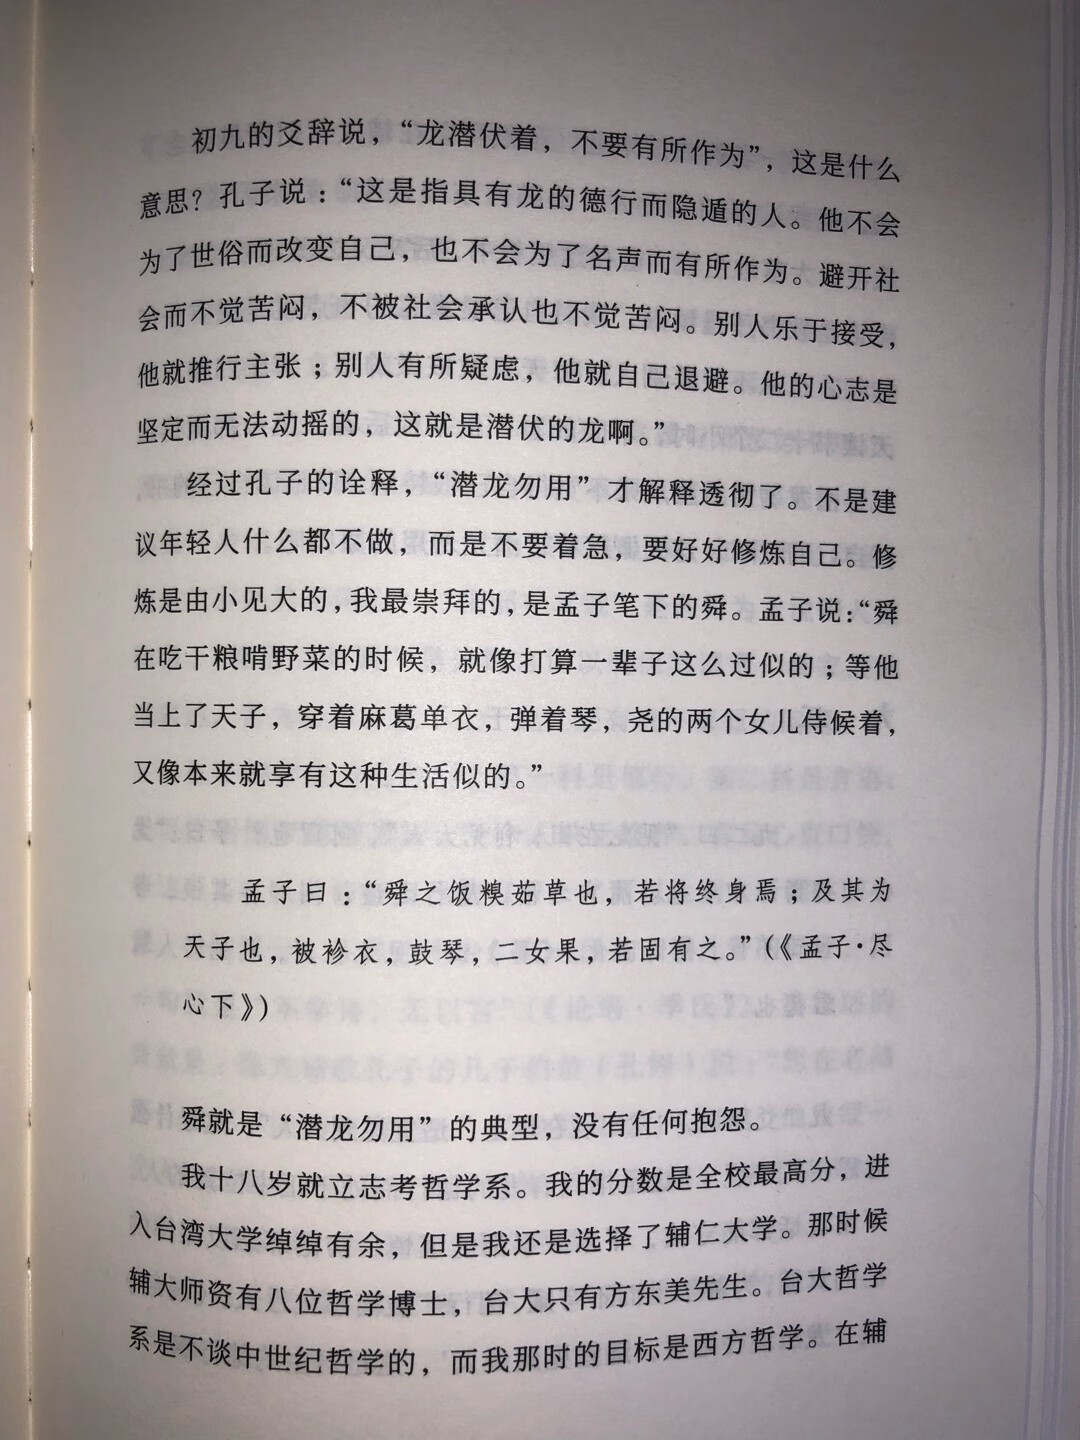 傅老师对先秦经典做了详尽的对比与注述，介绍了先秦诸儒思想的同异之处，值得一读